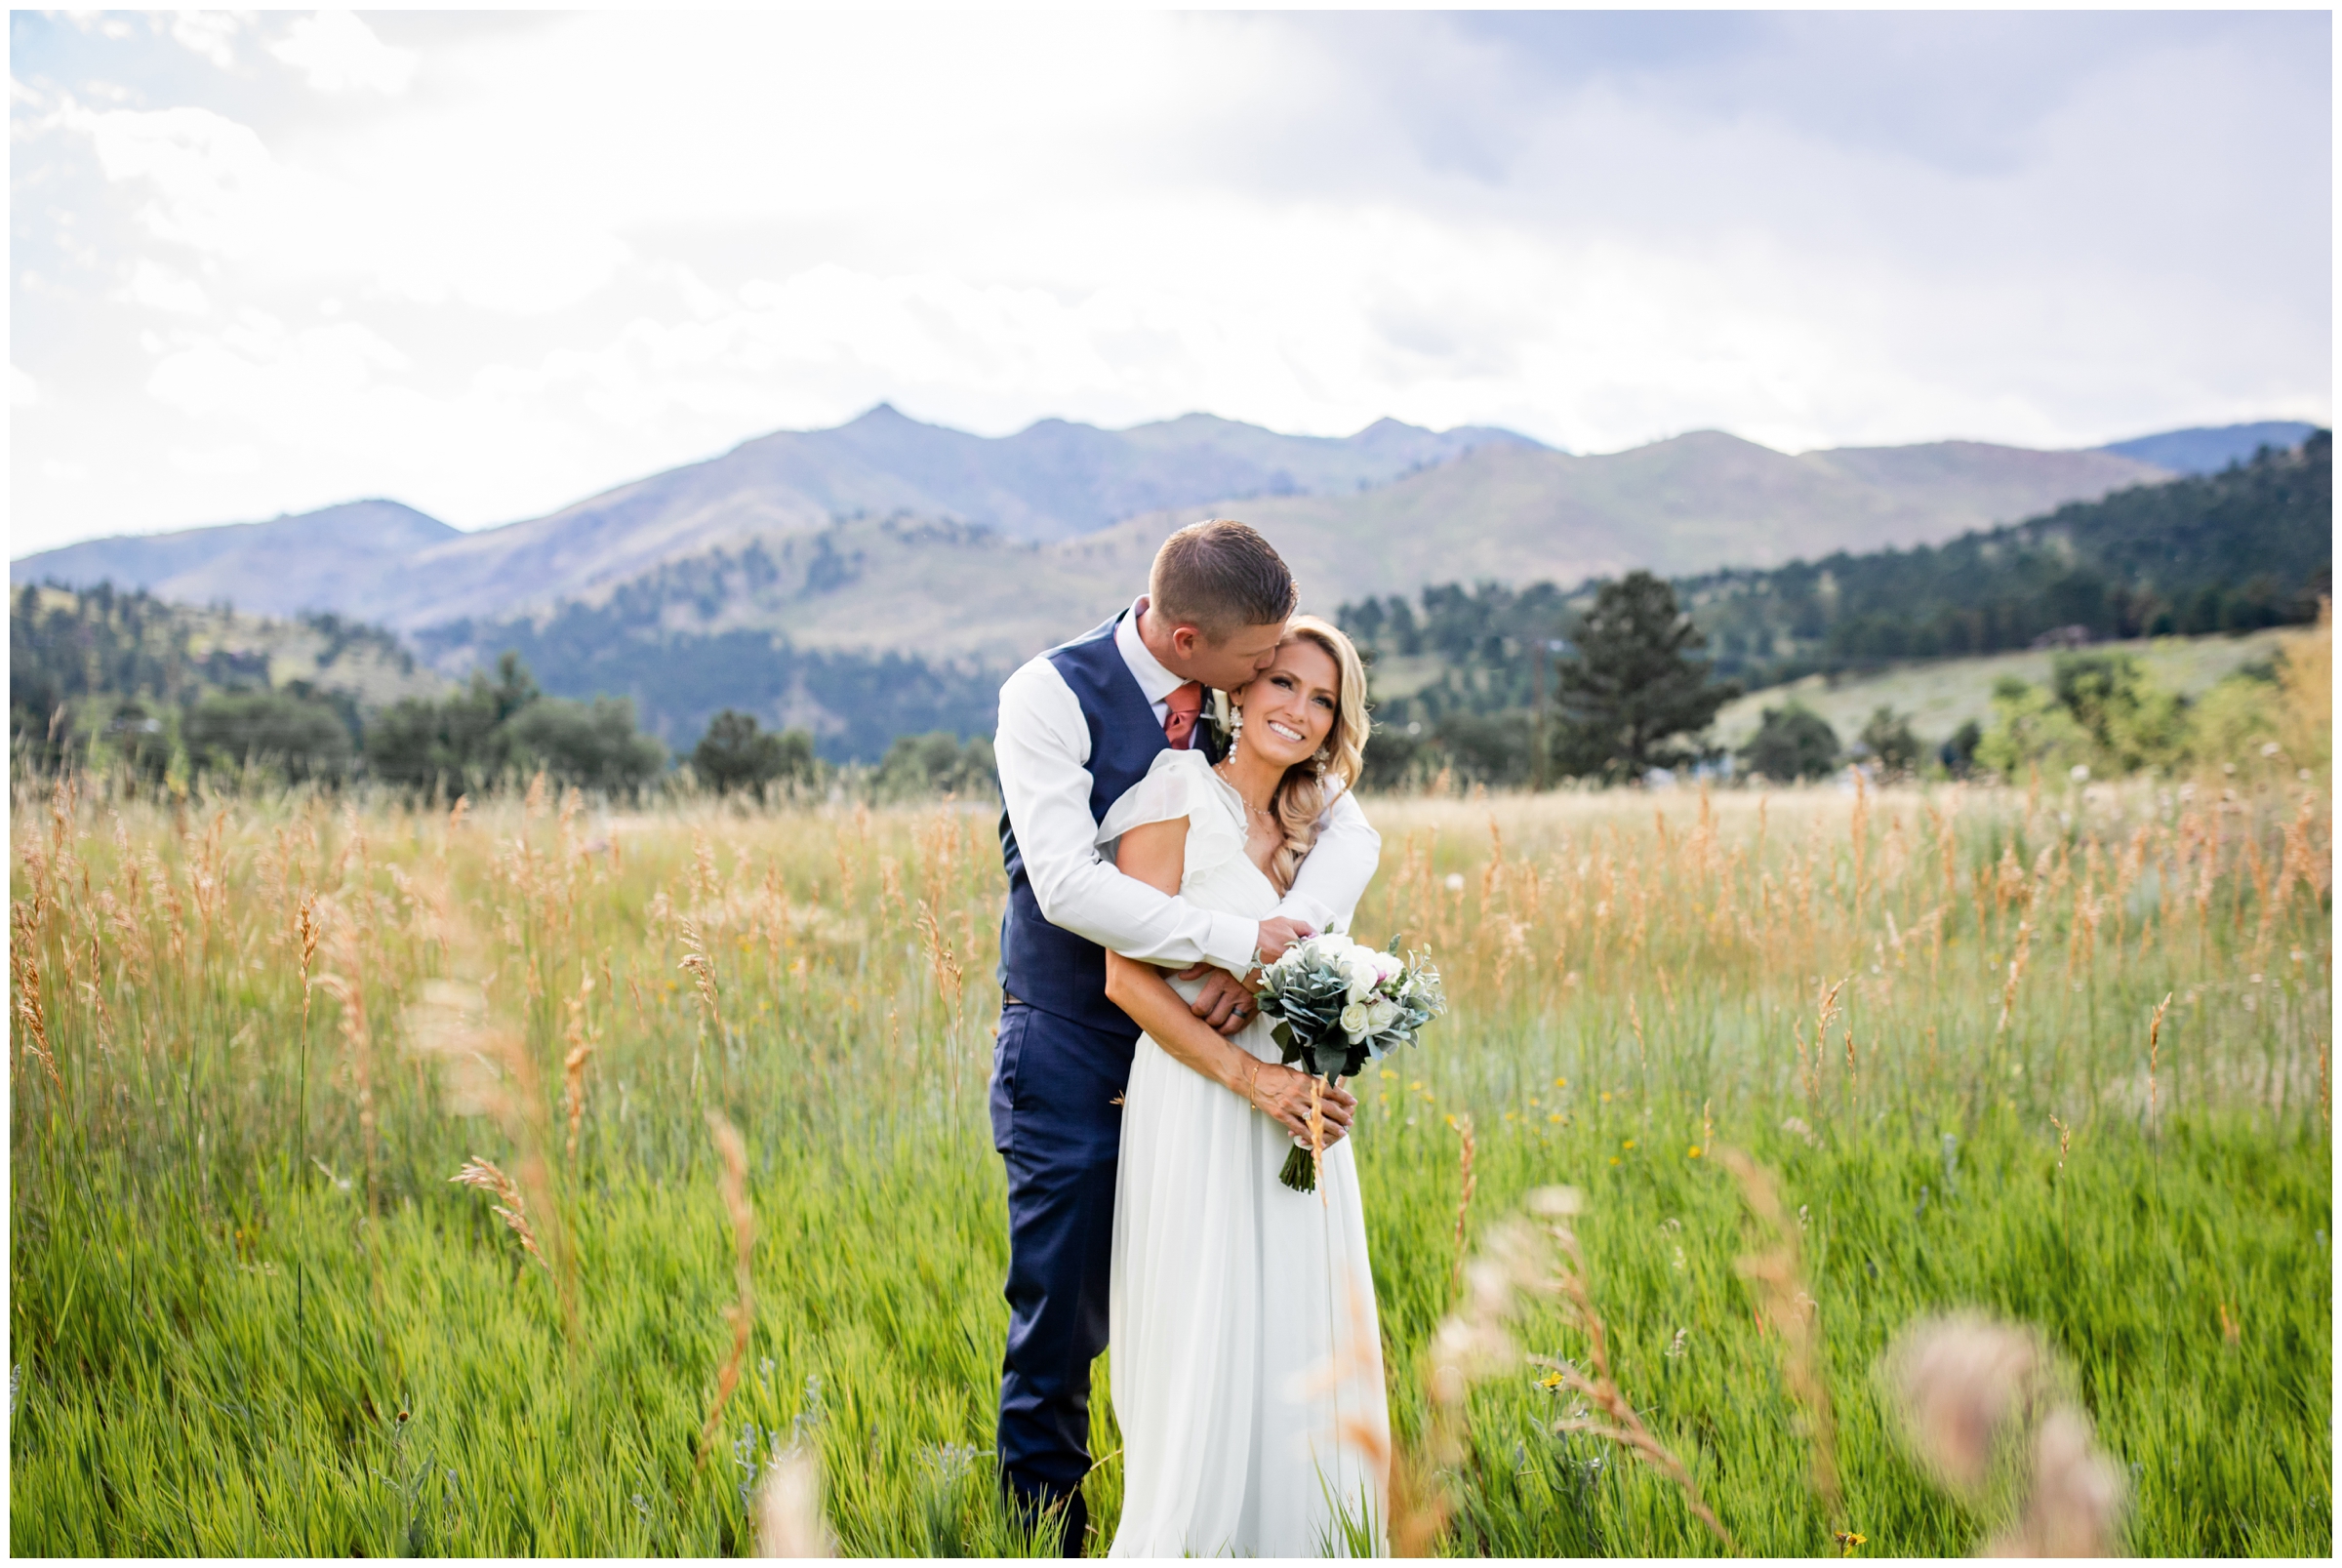 summer mountain wedding inspiration in Boulder Colorado by Plum Pretty Photos 